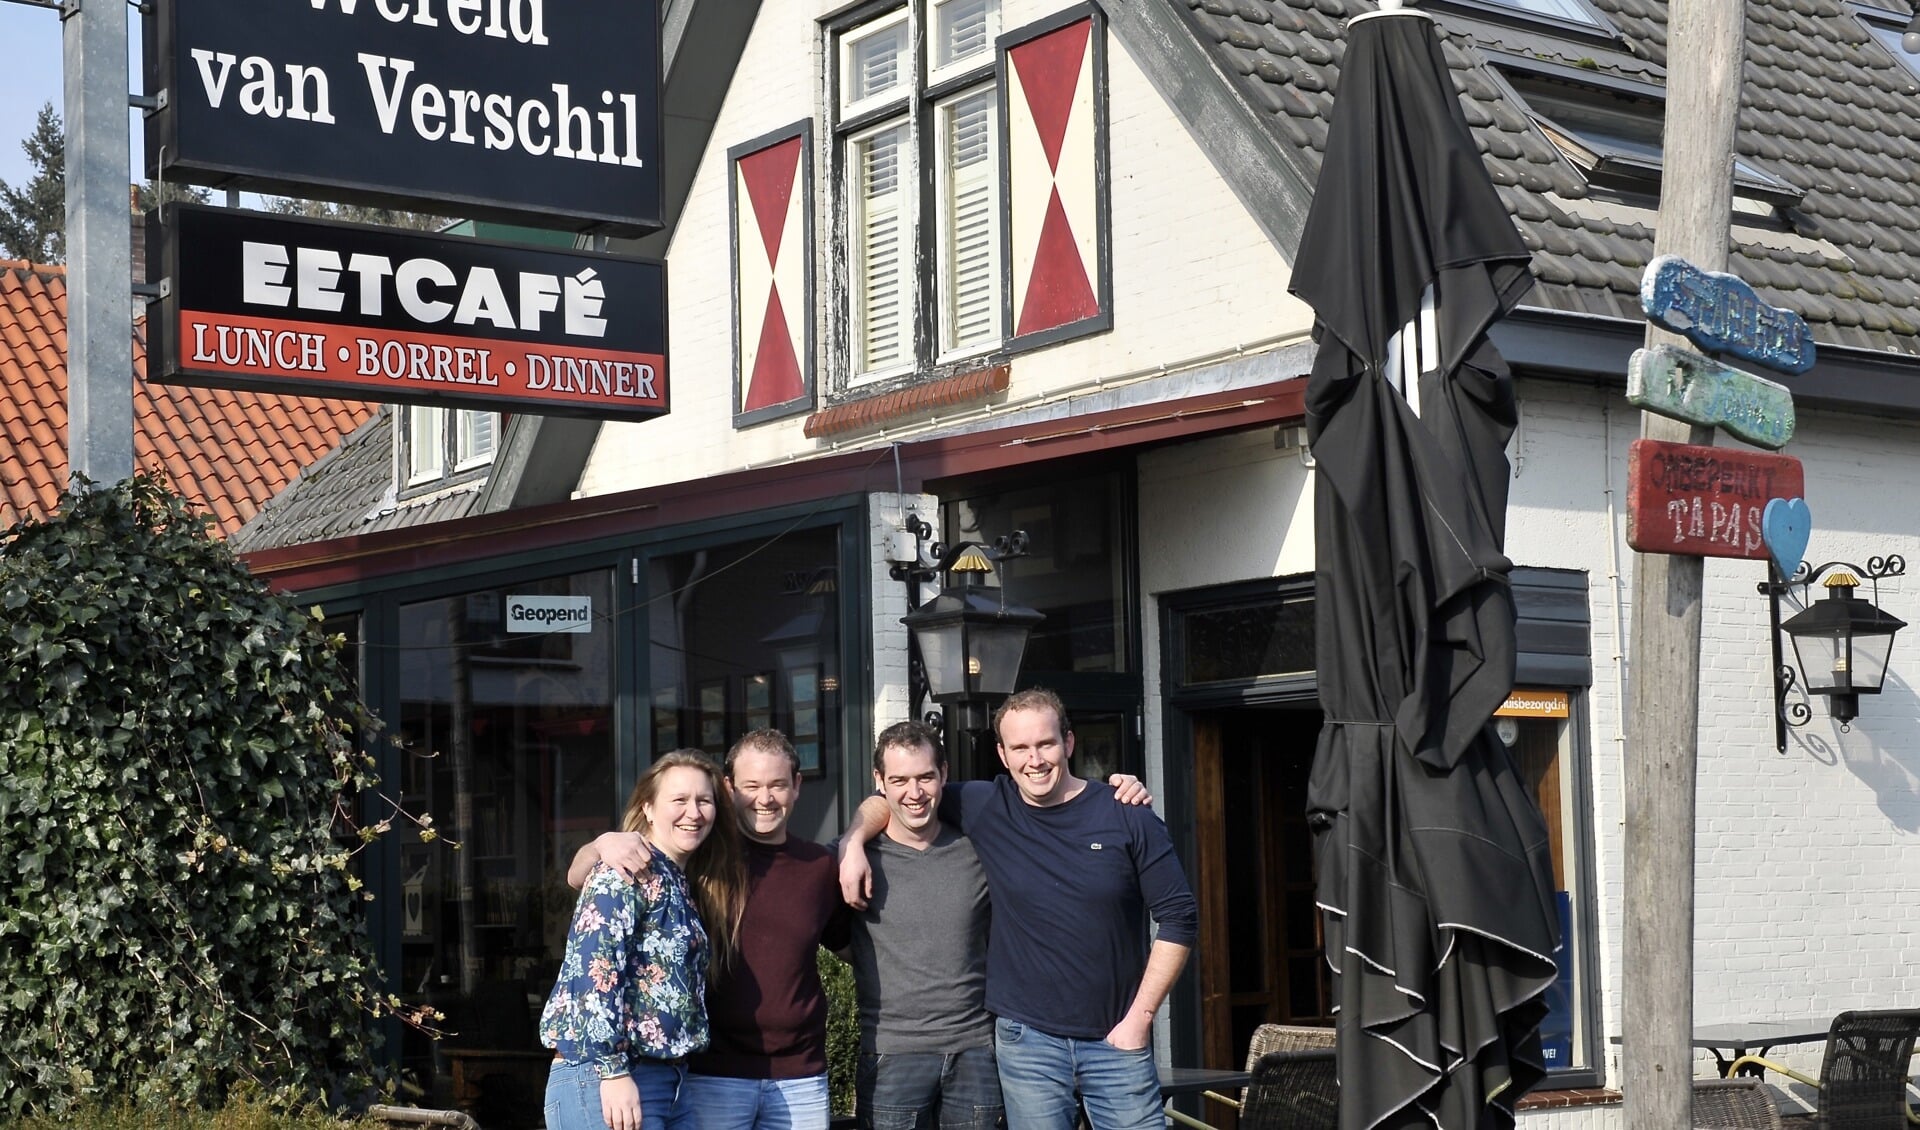 Evelien Germeraad, Marco Marchal, Peter van Vulpen en Daniel Reincke voor 'De Wereld van Verschil', die zij als kroeg voor Leersum willen behouden.